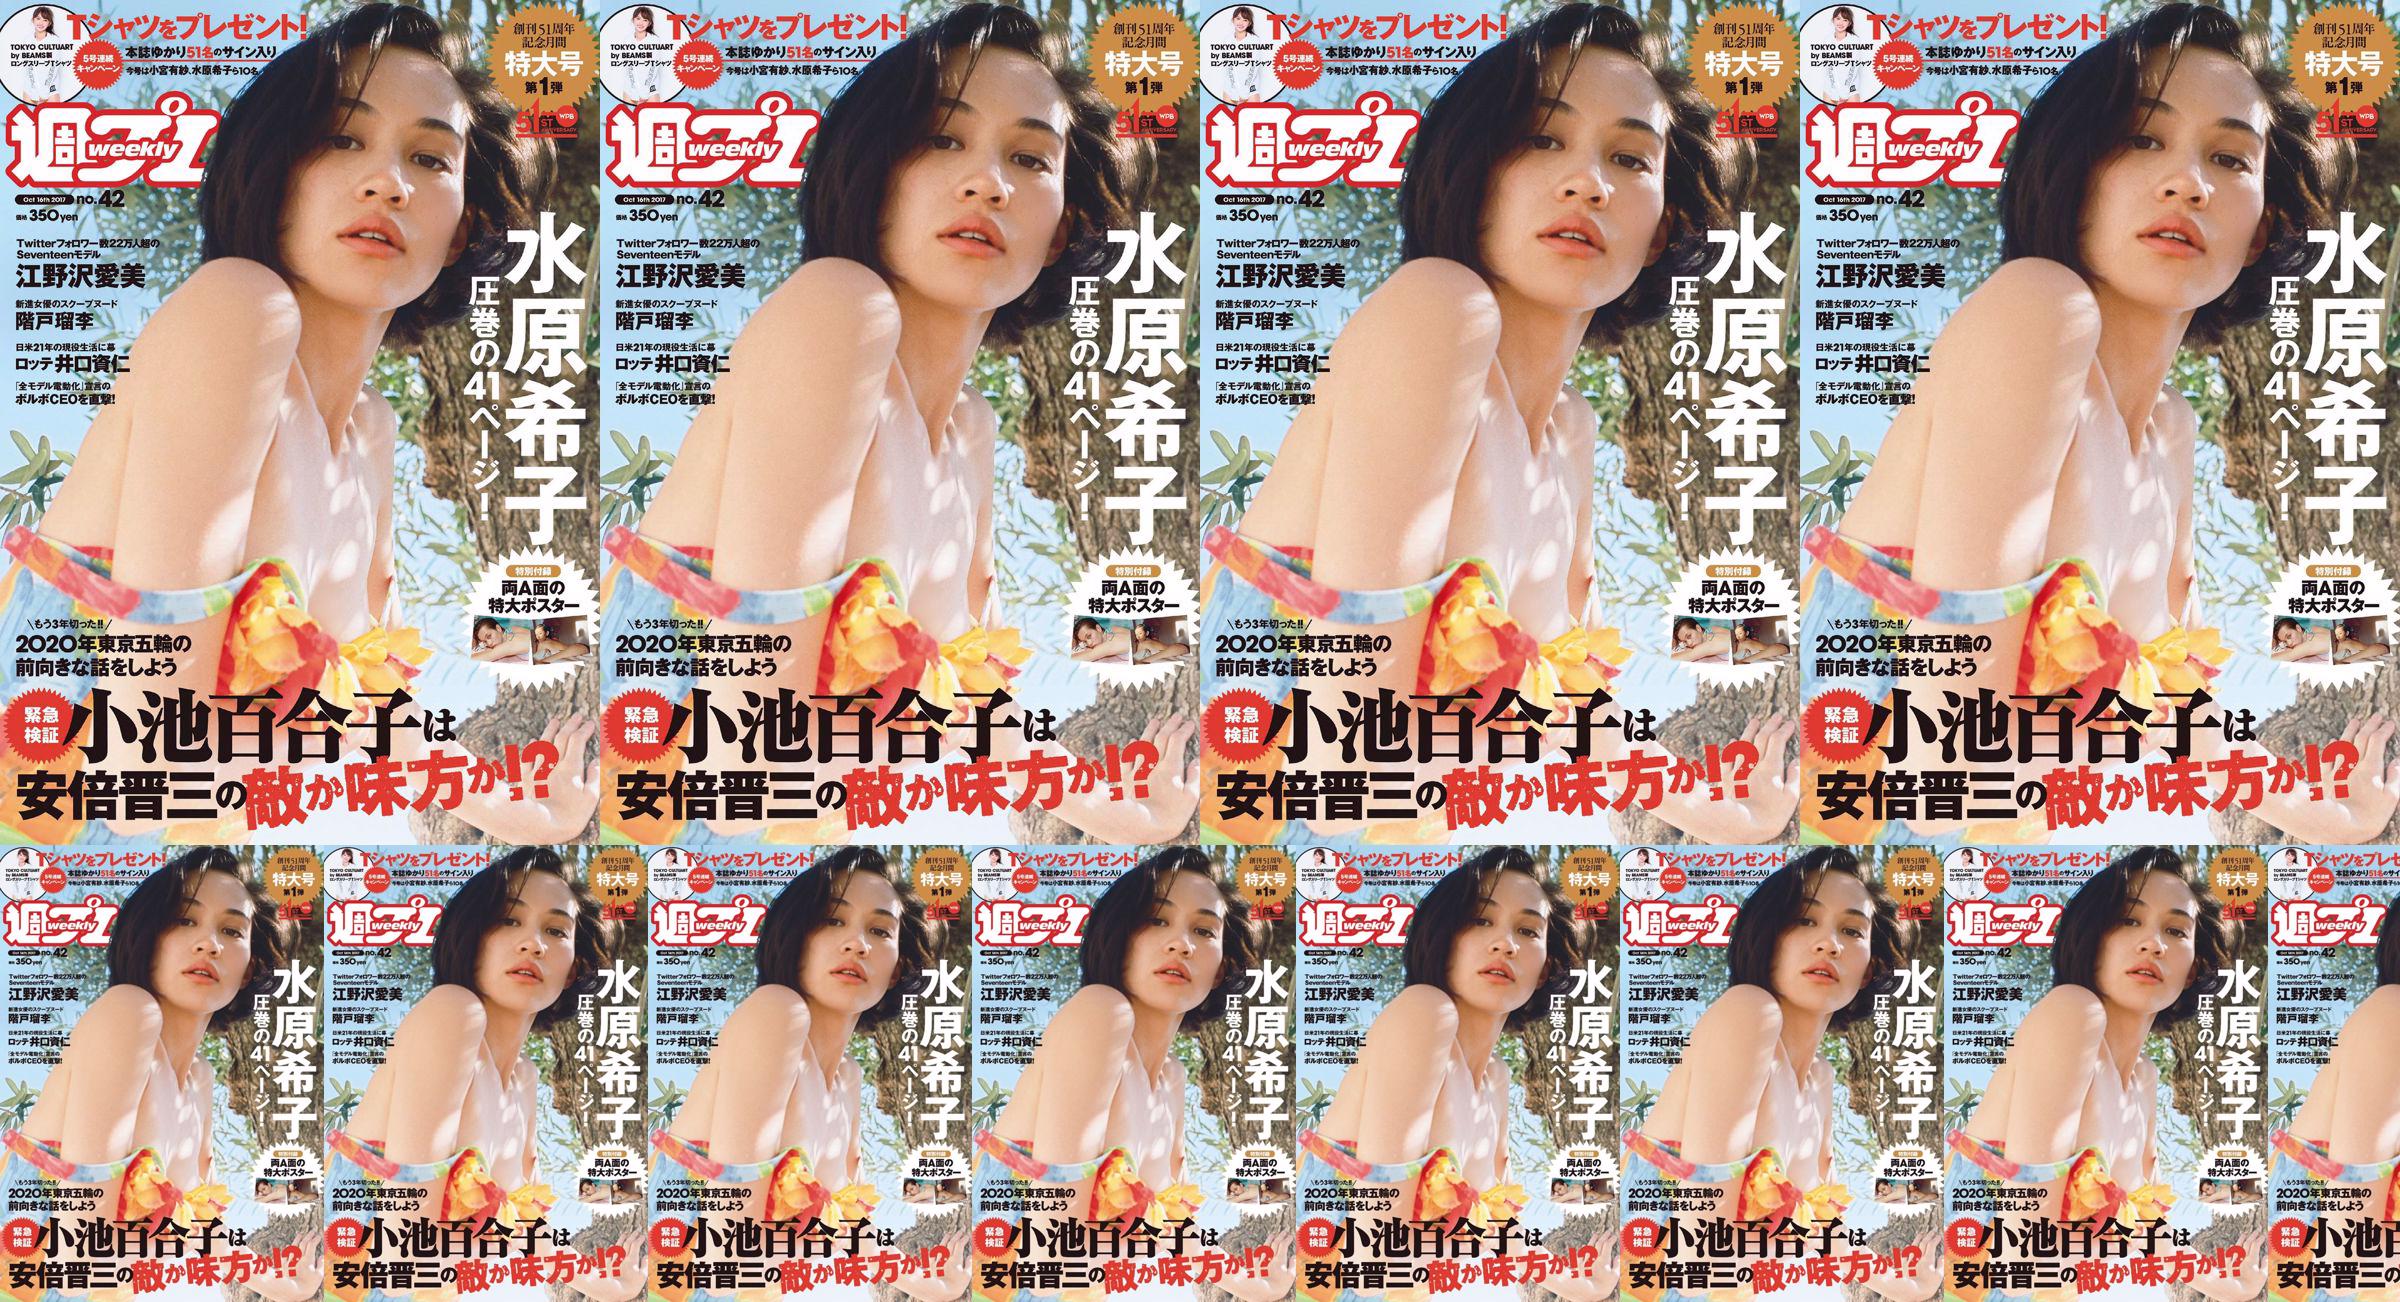 Kiko Mizuhara Manami Enosawa Serina Fukui Miu Nakamura Ruri Shinato [Weekly Playboy] 2017 No.42 Photo Magazine No.f068f9 Pagina 1